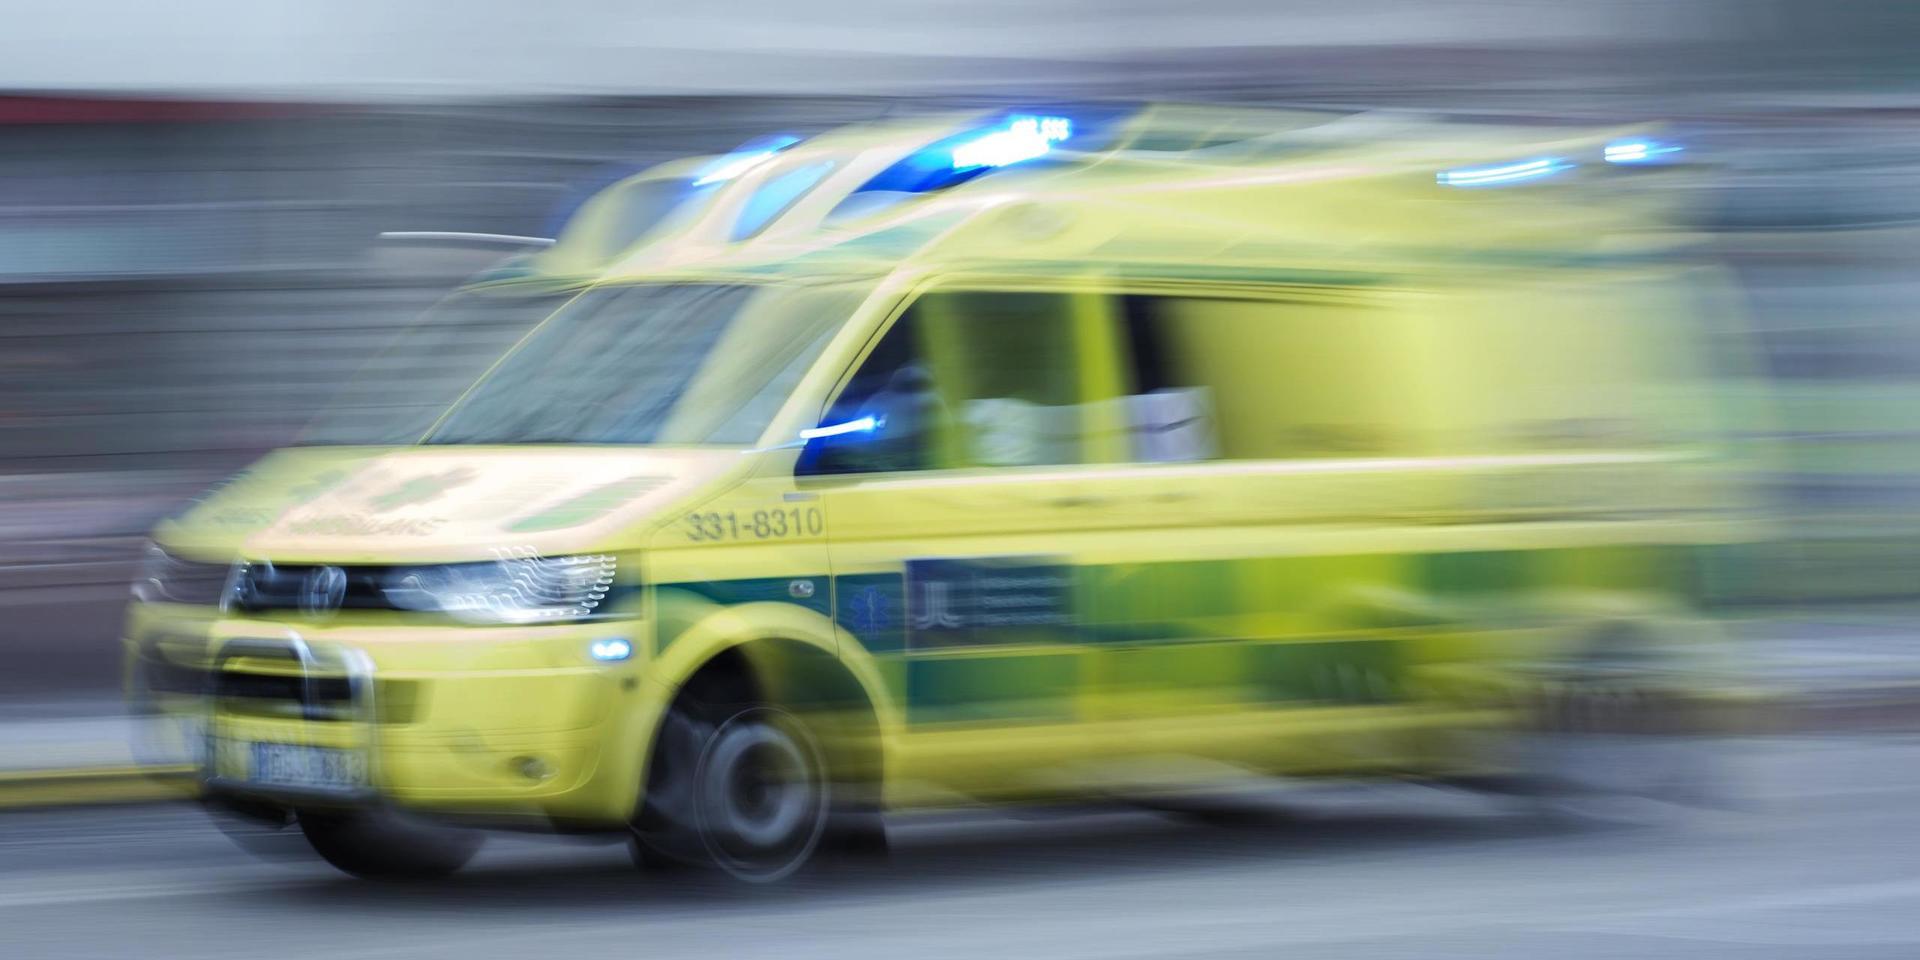 Den 4 juli larmades ambulans till ett flerfamiljshus i Gävle där en flicka fallit från hög höjd. Hon fångades dock av två kvinnor på marken. Arkivbild.